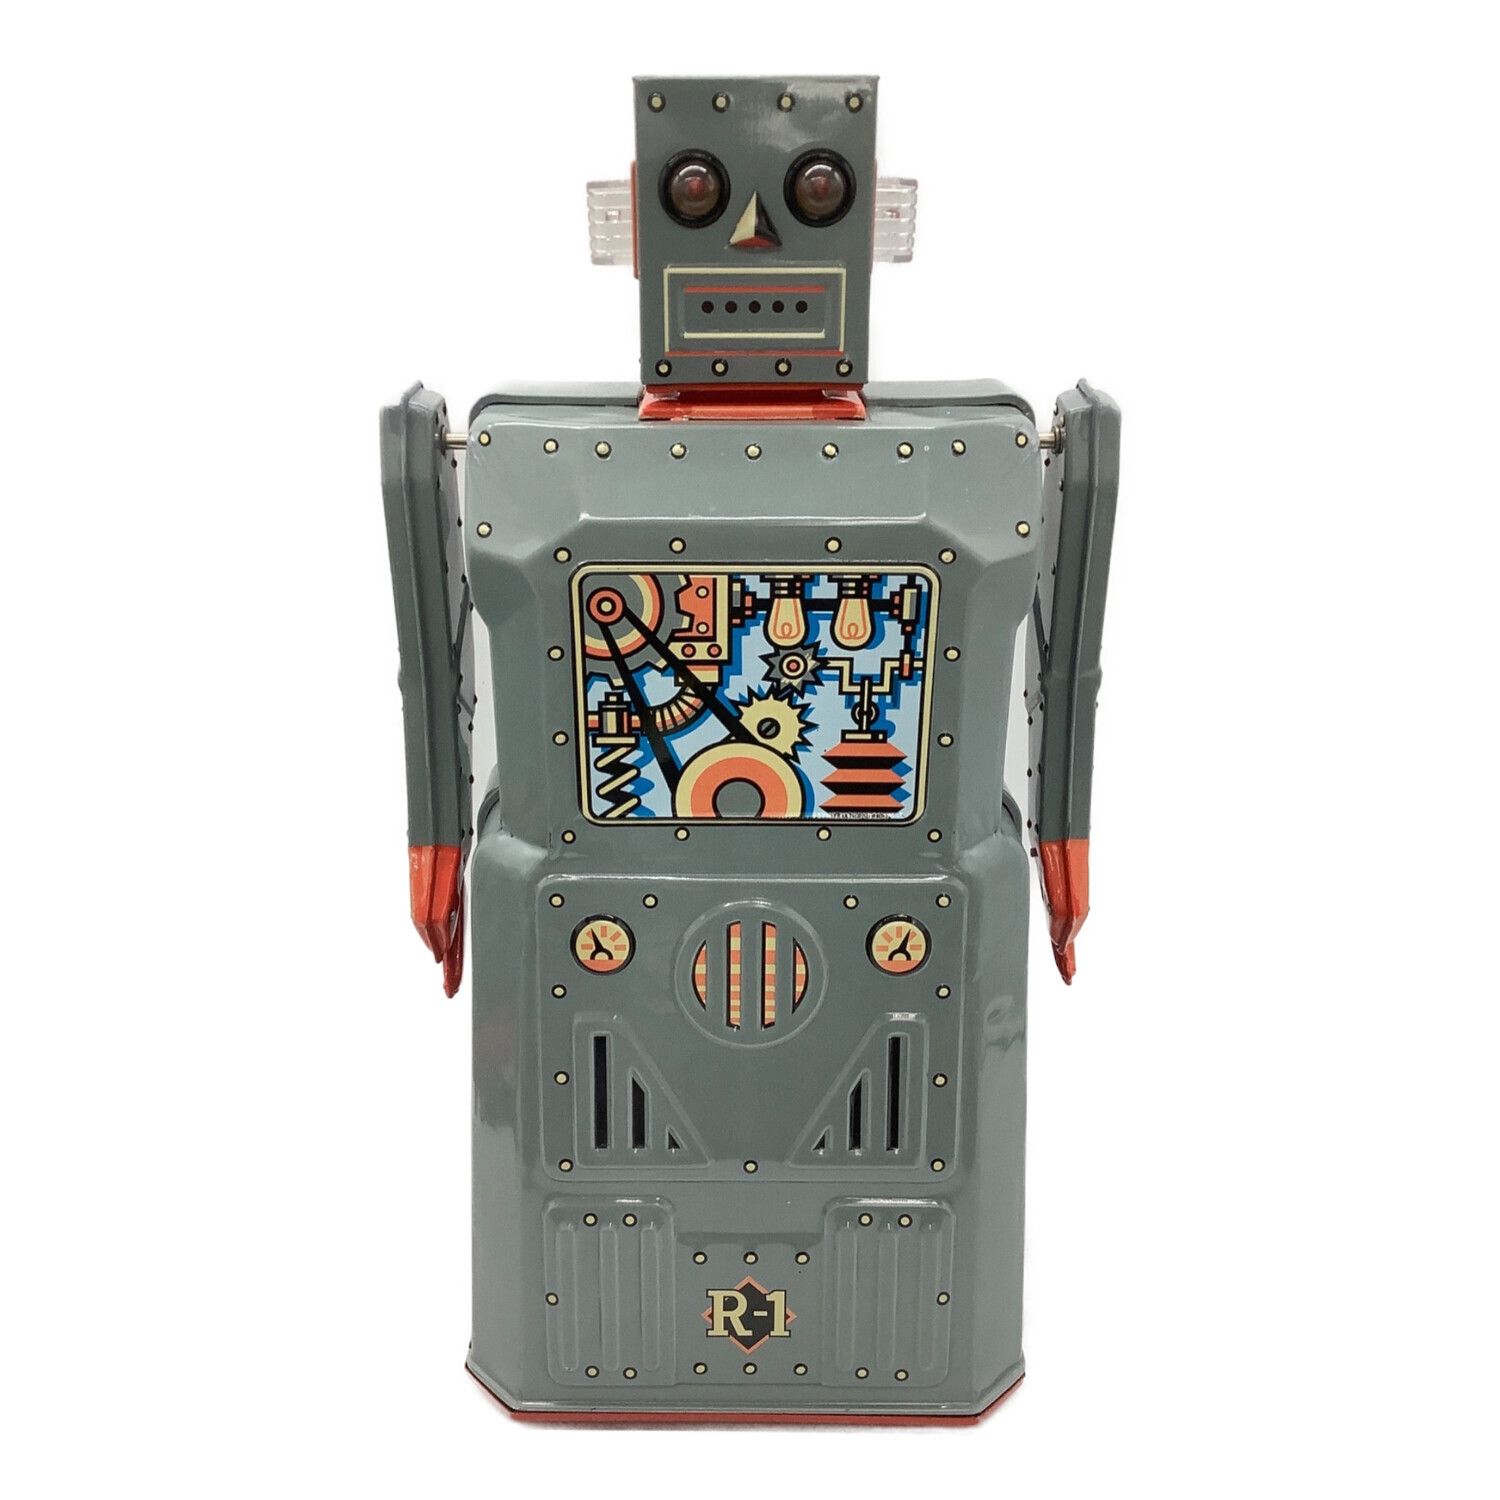 増田屋 (マスダヤ) ブリキロボット 4979092013075 ROBOT ONE R-1 488 